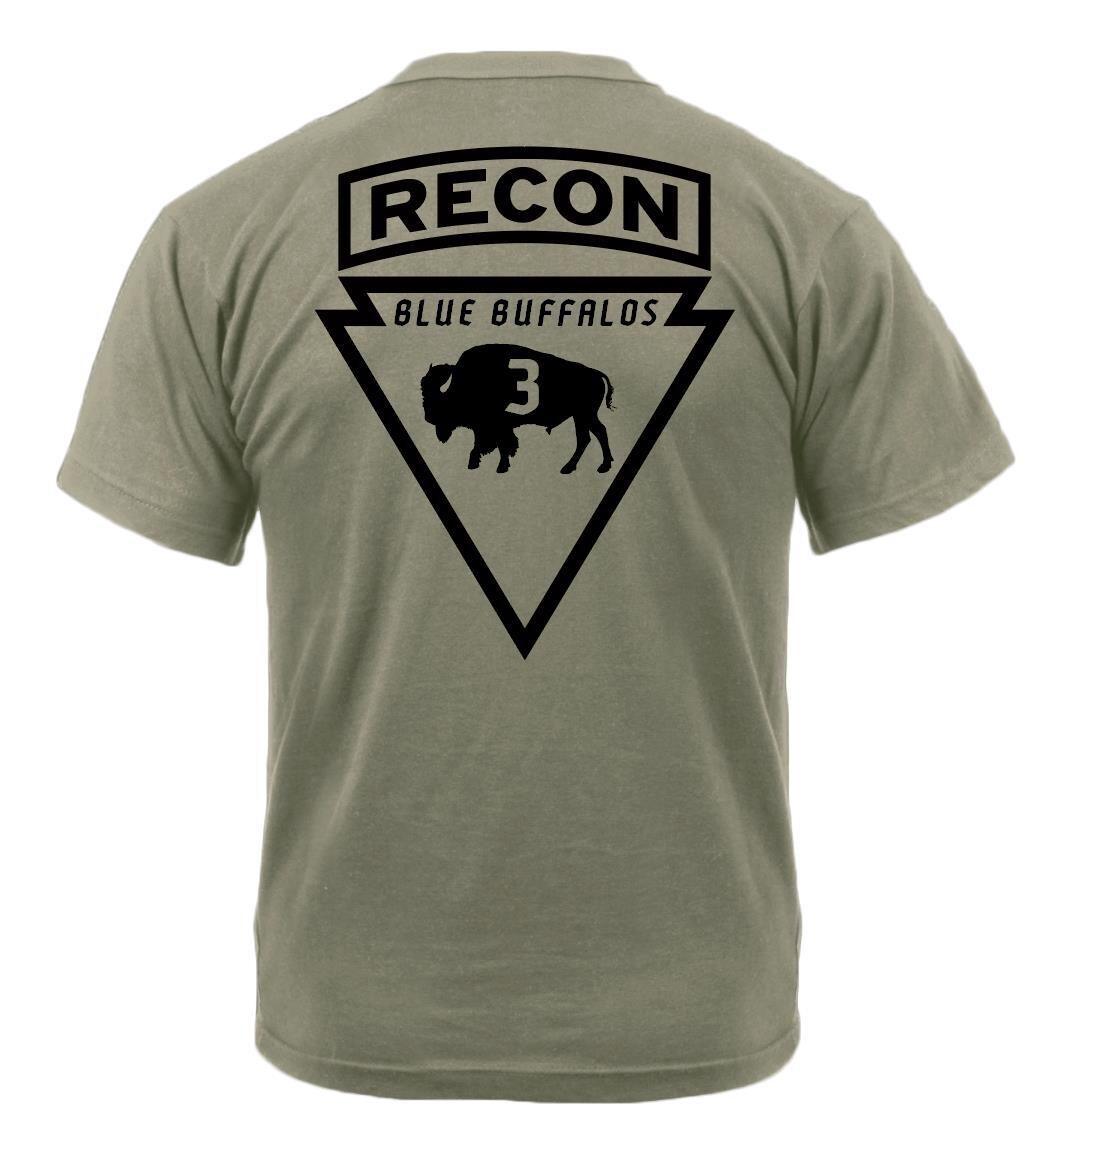 3rd Platoon "Blue Buffalos" B TRP 1-32 CAV Coyote T-Shirt